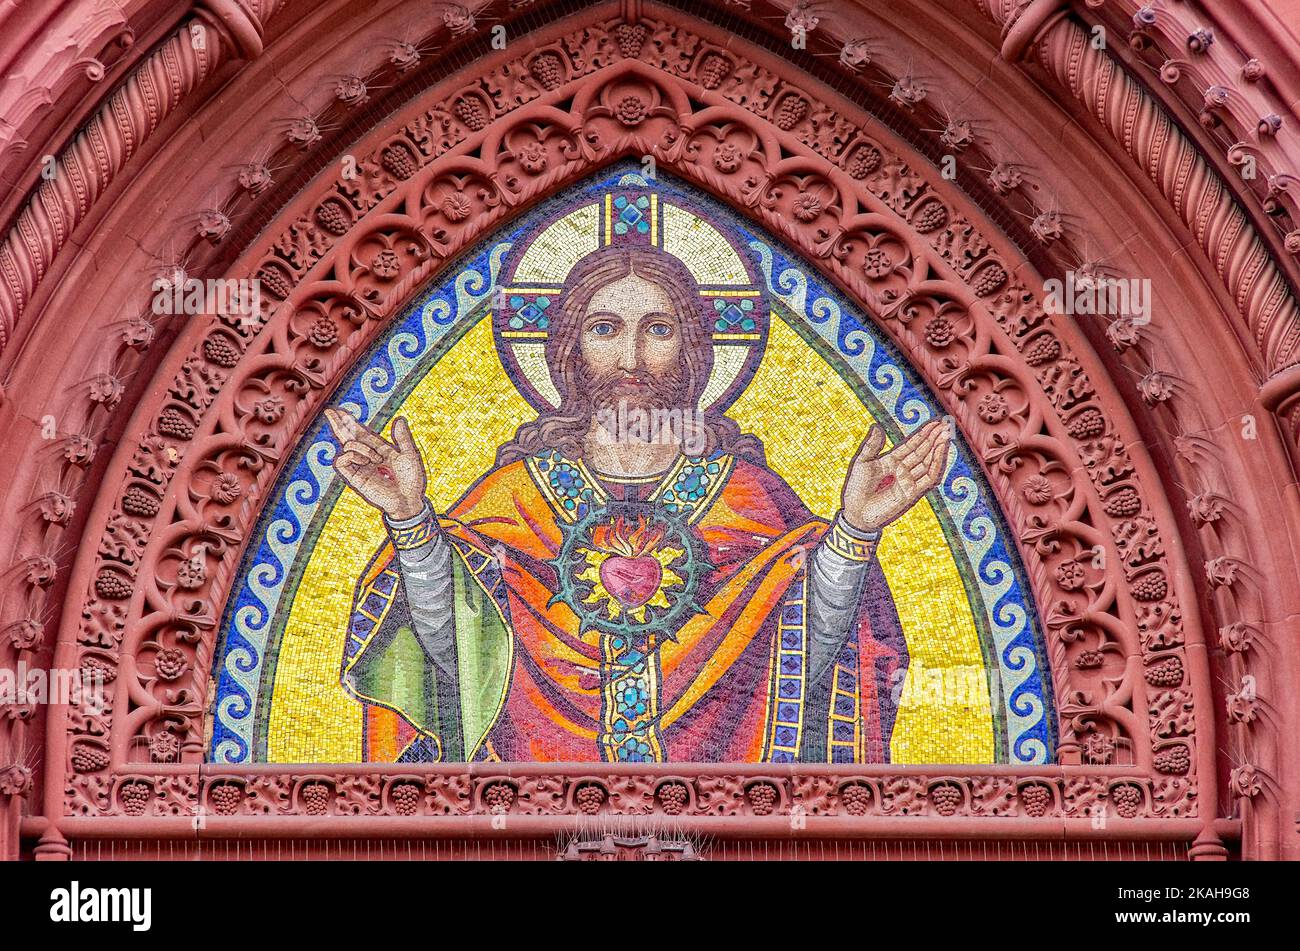 Mosaïque représentation de Jésus-Christ dans l'arche pointue du portail principal de l'Église du Sacré-cœur à Fribourg im Breisgau, Allemagne. Banque D'Images